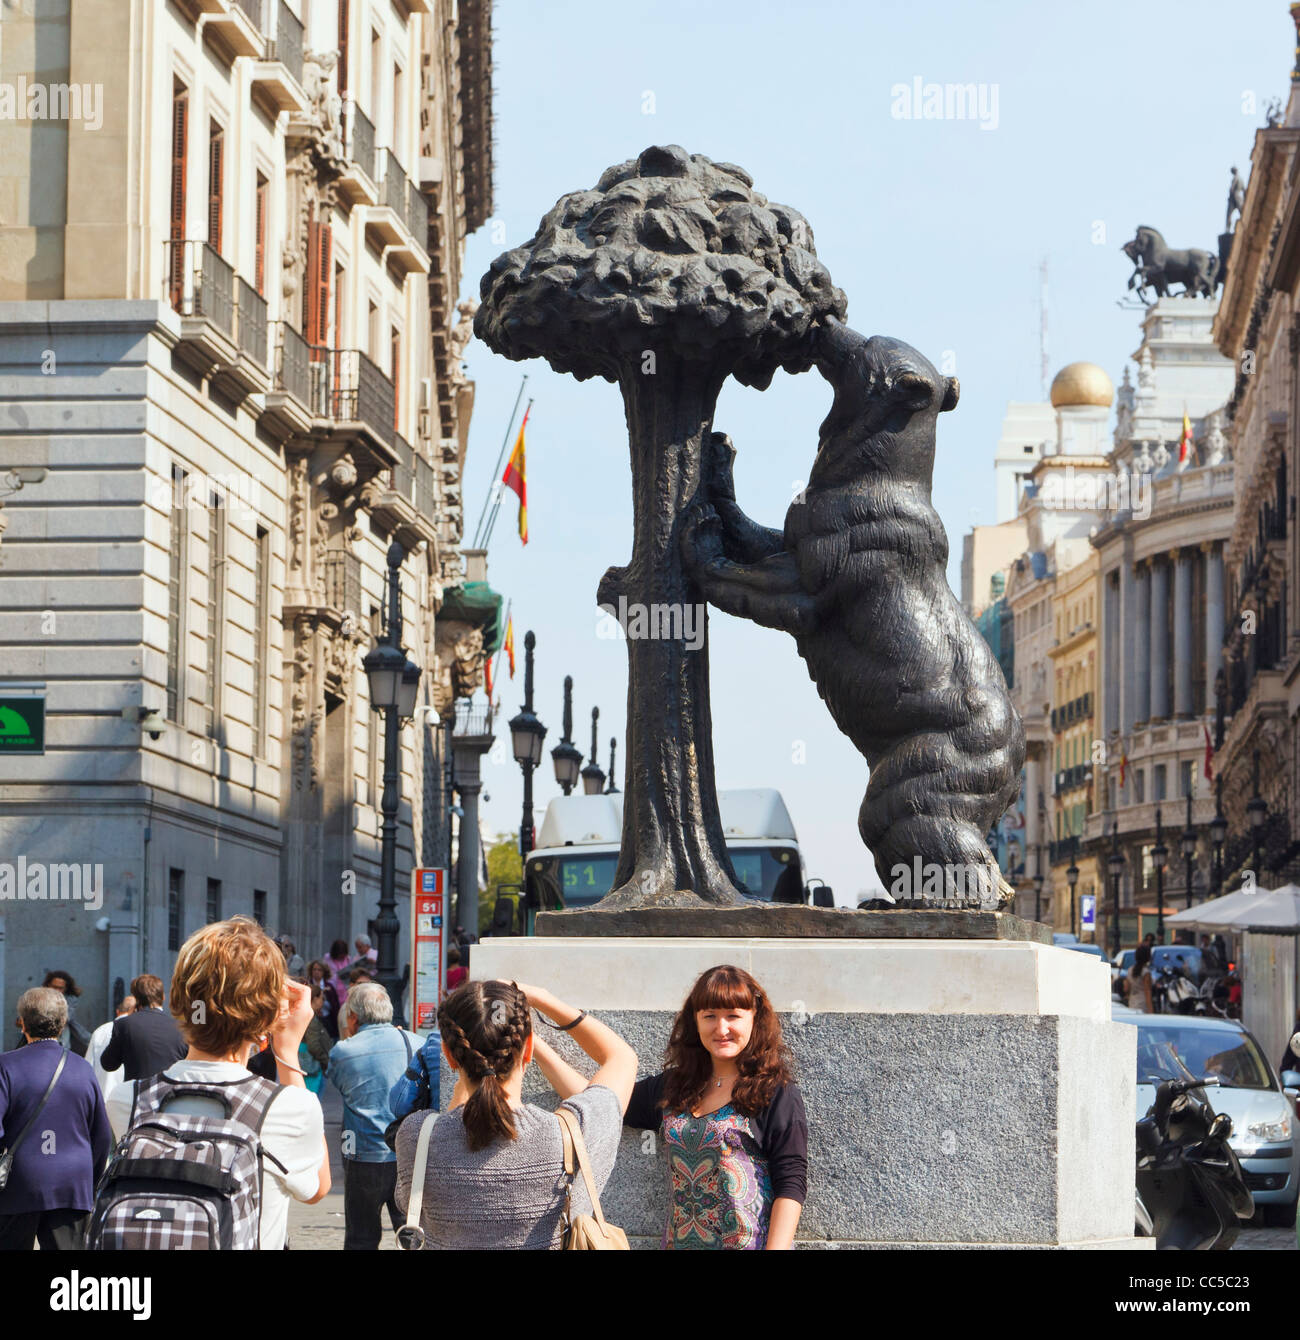 Madrid, Espagne. La Puerta del Sol. Les touristes de photographier les uns les autres en face d'une statue d'ours et de l'arbousier Banque D'Images